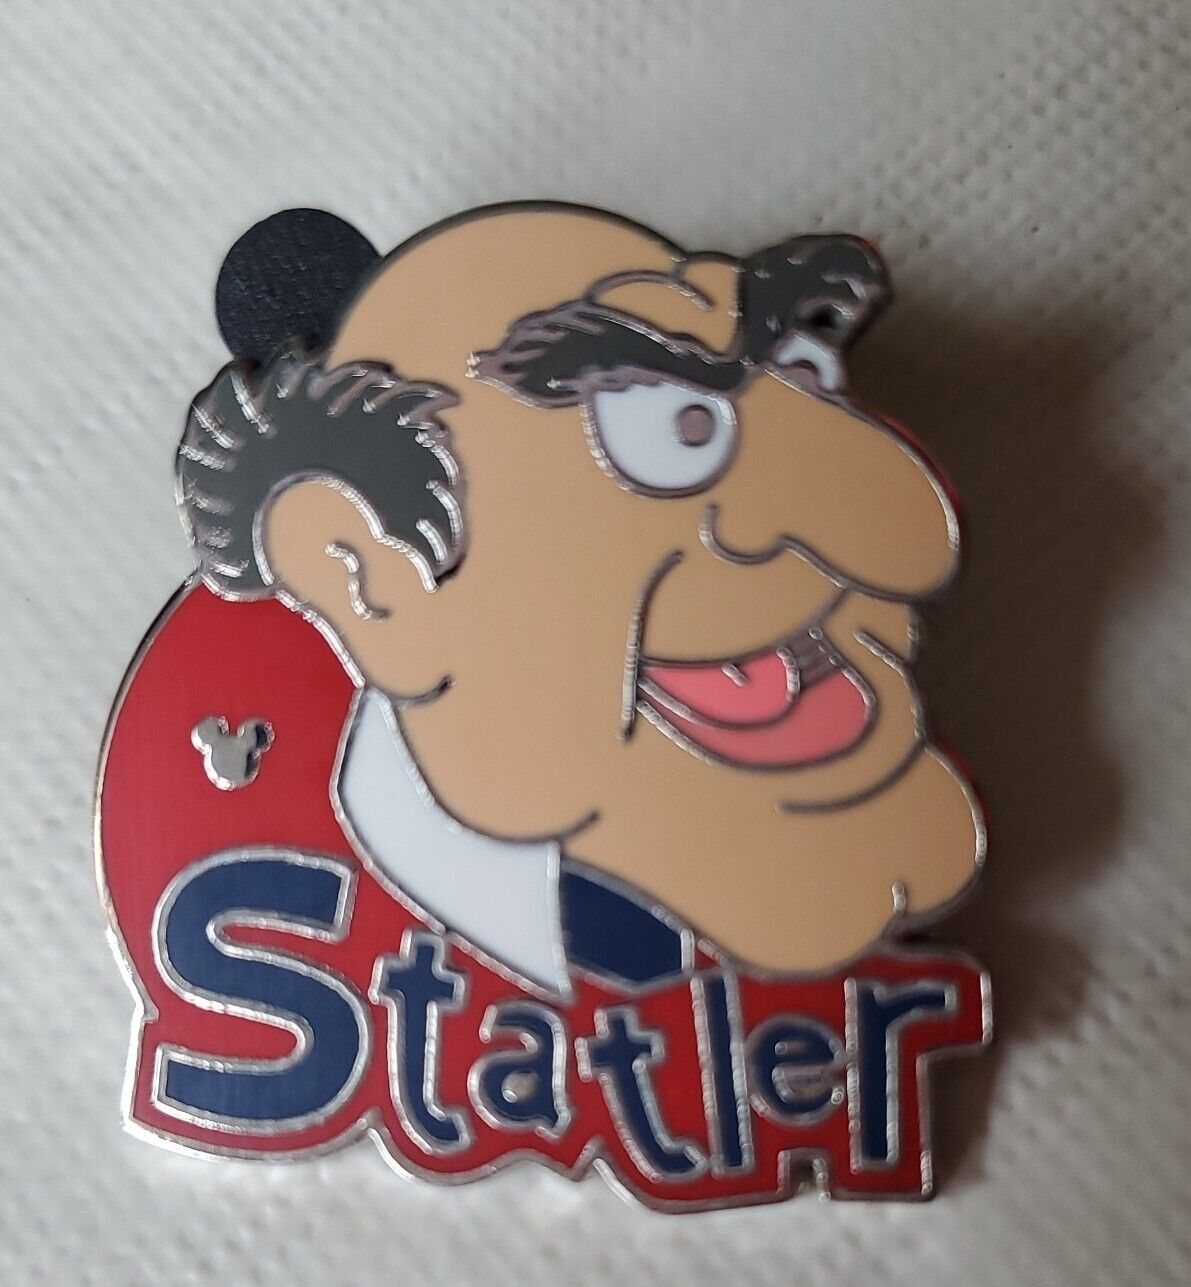 2006 Disney Muppets Statler Hidden Mickey 4 Of 5 Trading Pin